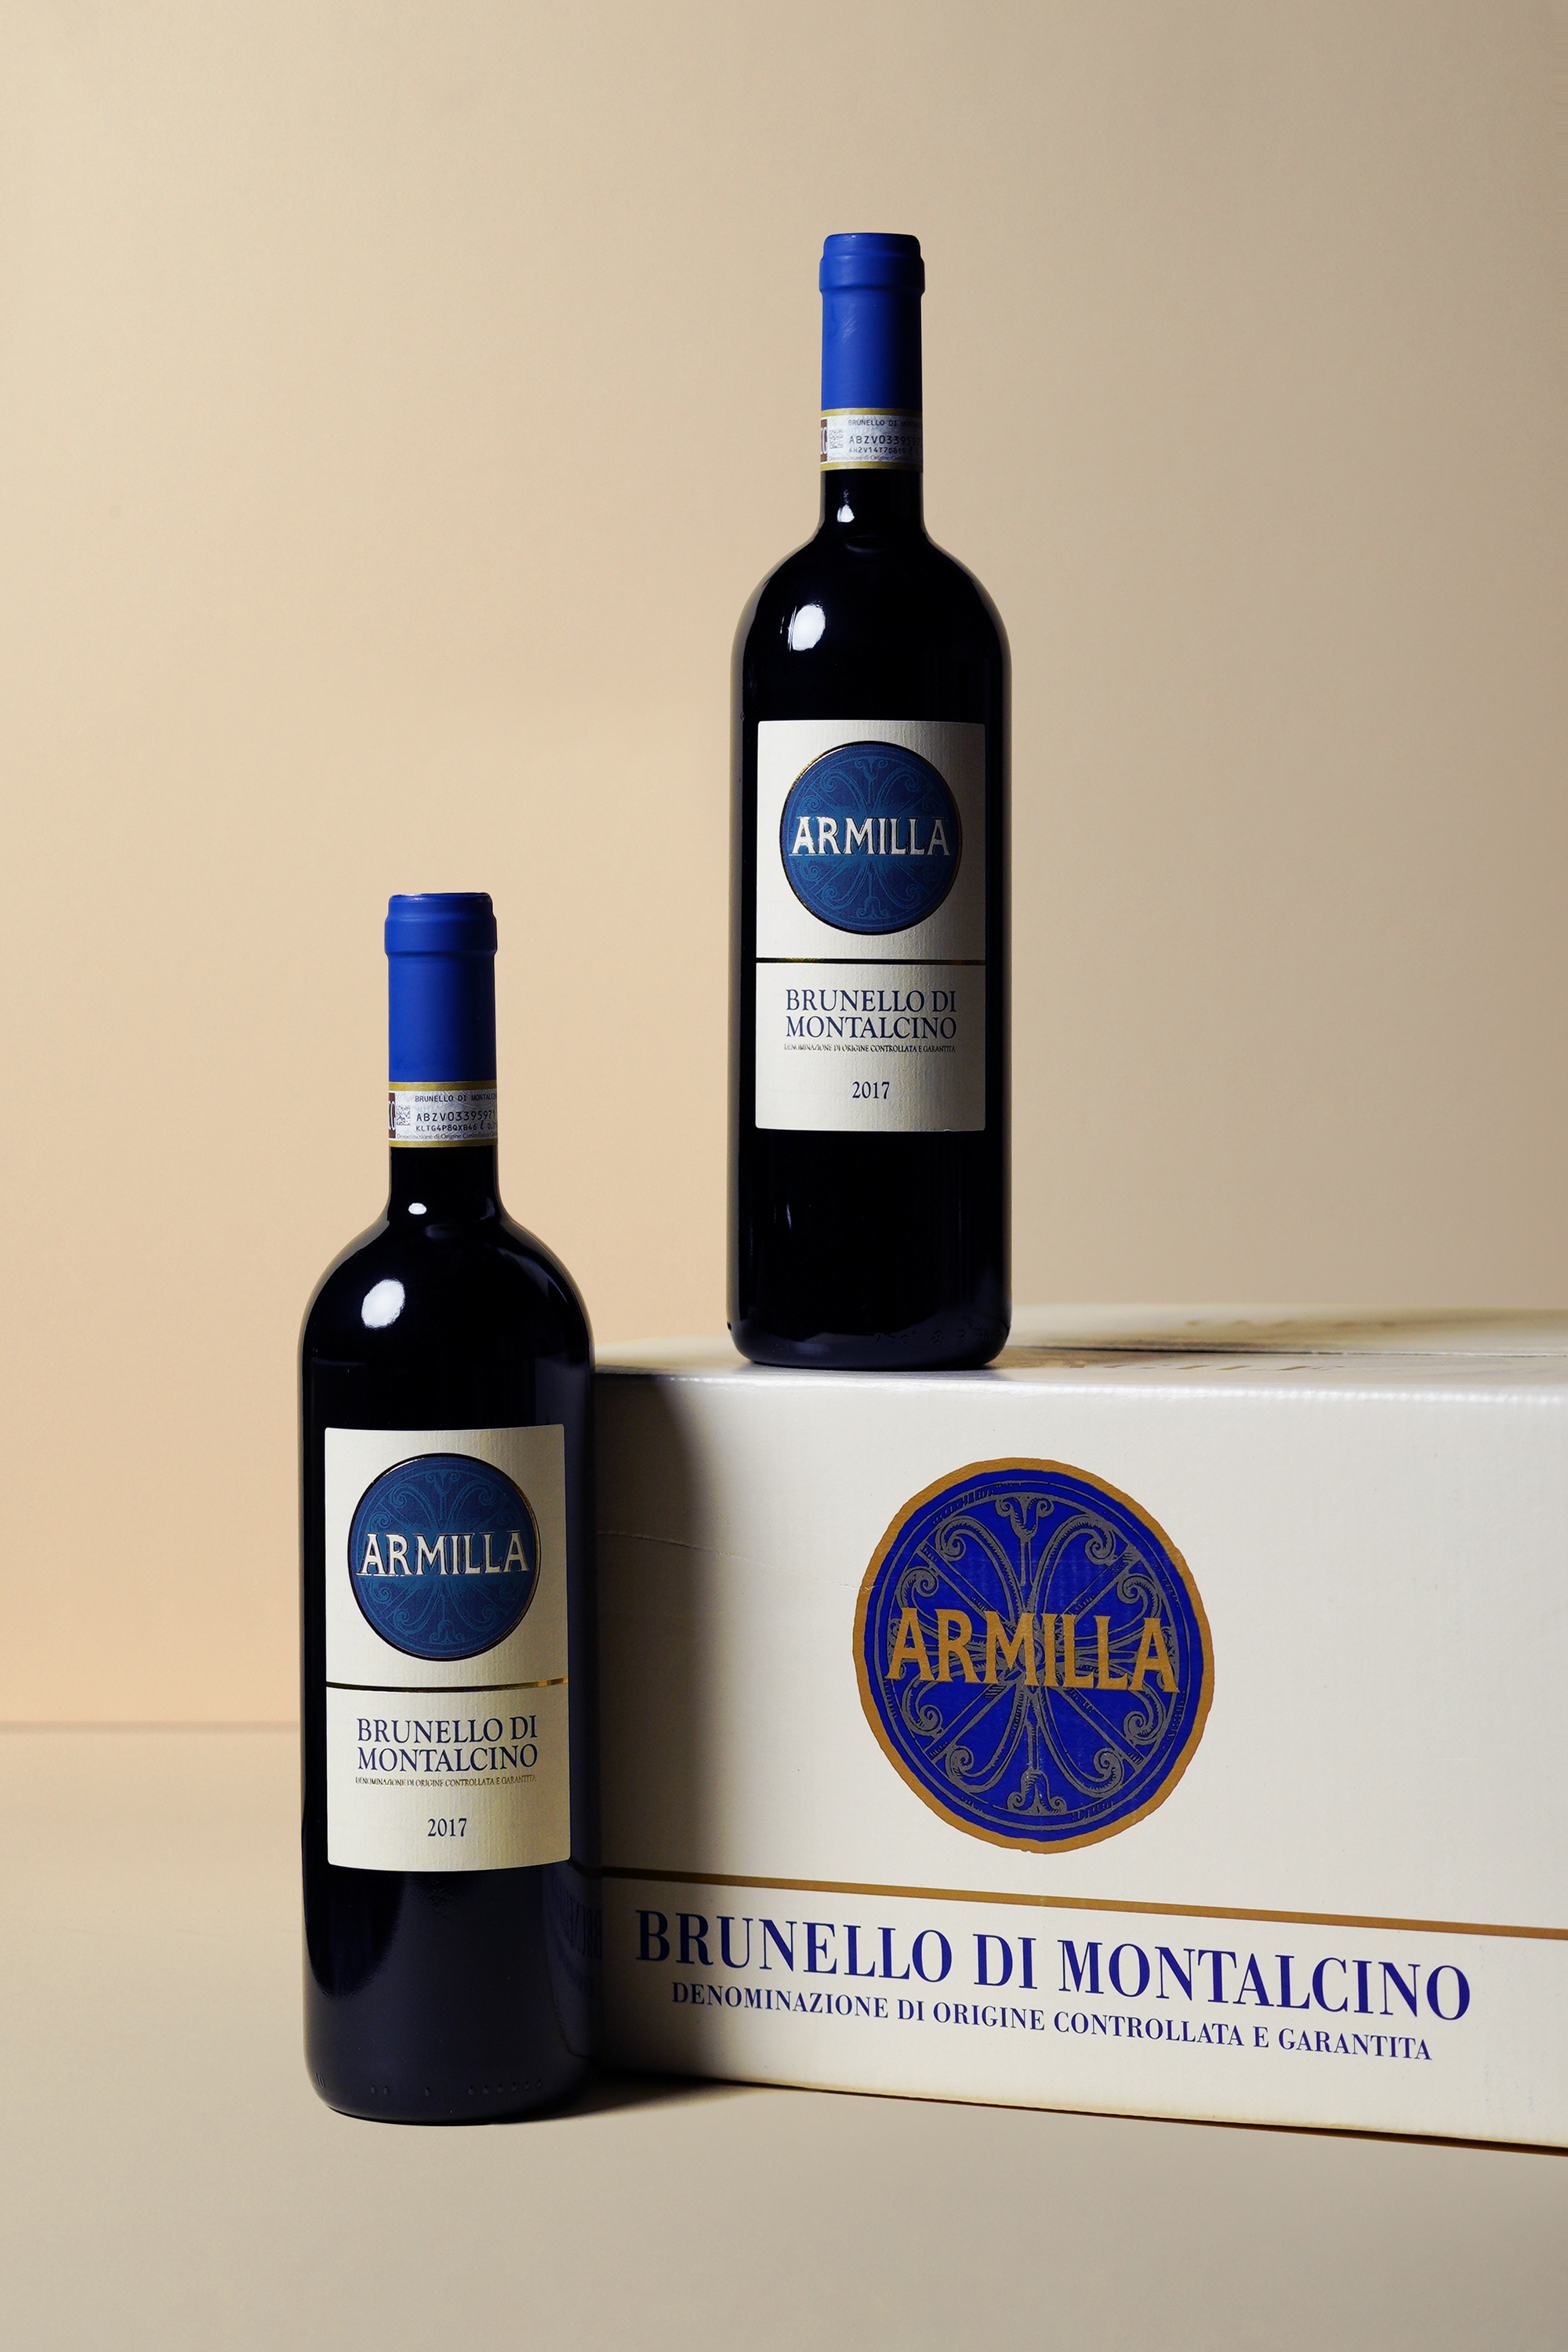 Armilla, Brunello di Montalcino 2017 (OCC of 6 bottles)